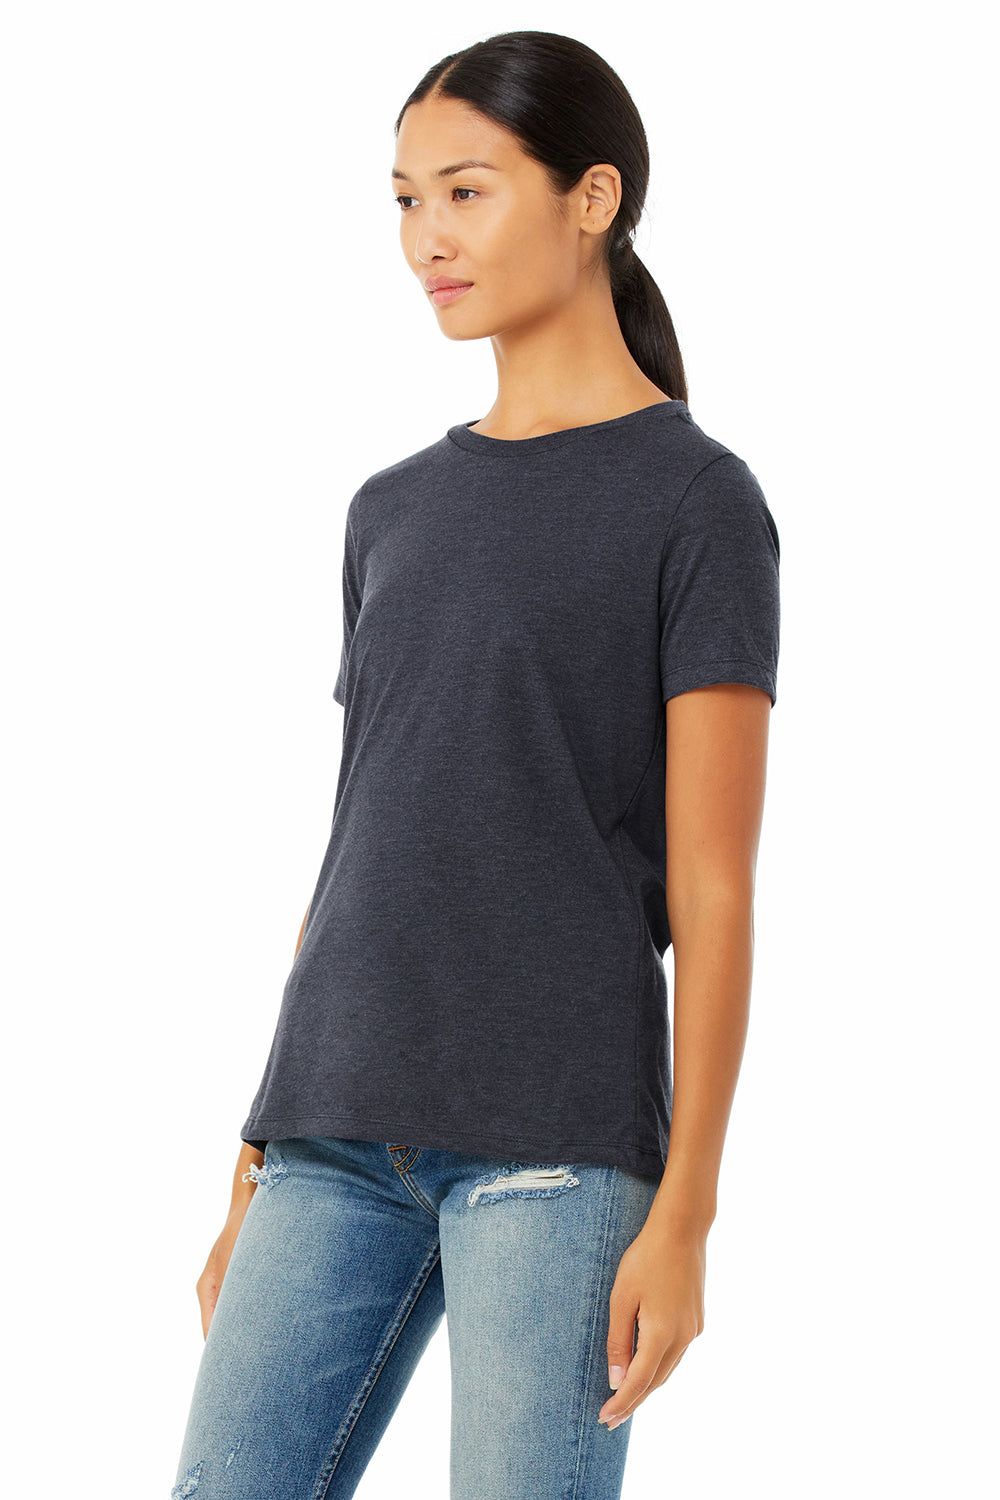 Bella + Canvas BC6400CVC/6400CVC Womens CVC Short Sleeve Crewneck T-Shirt Heather Navy Blue Model 3Q